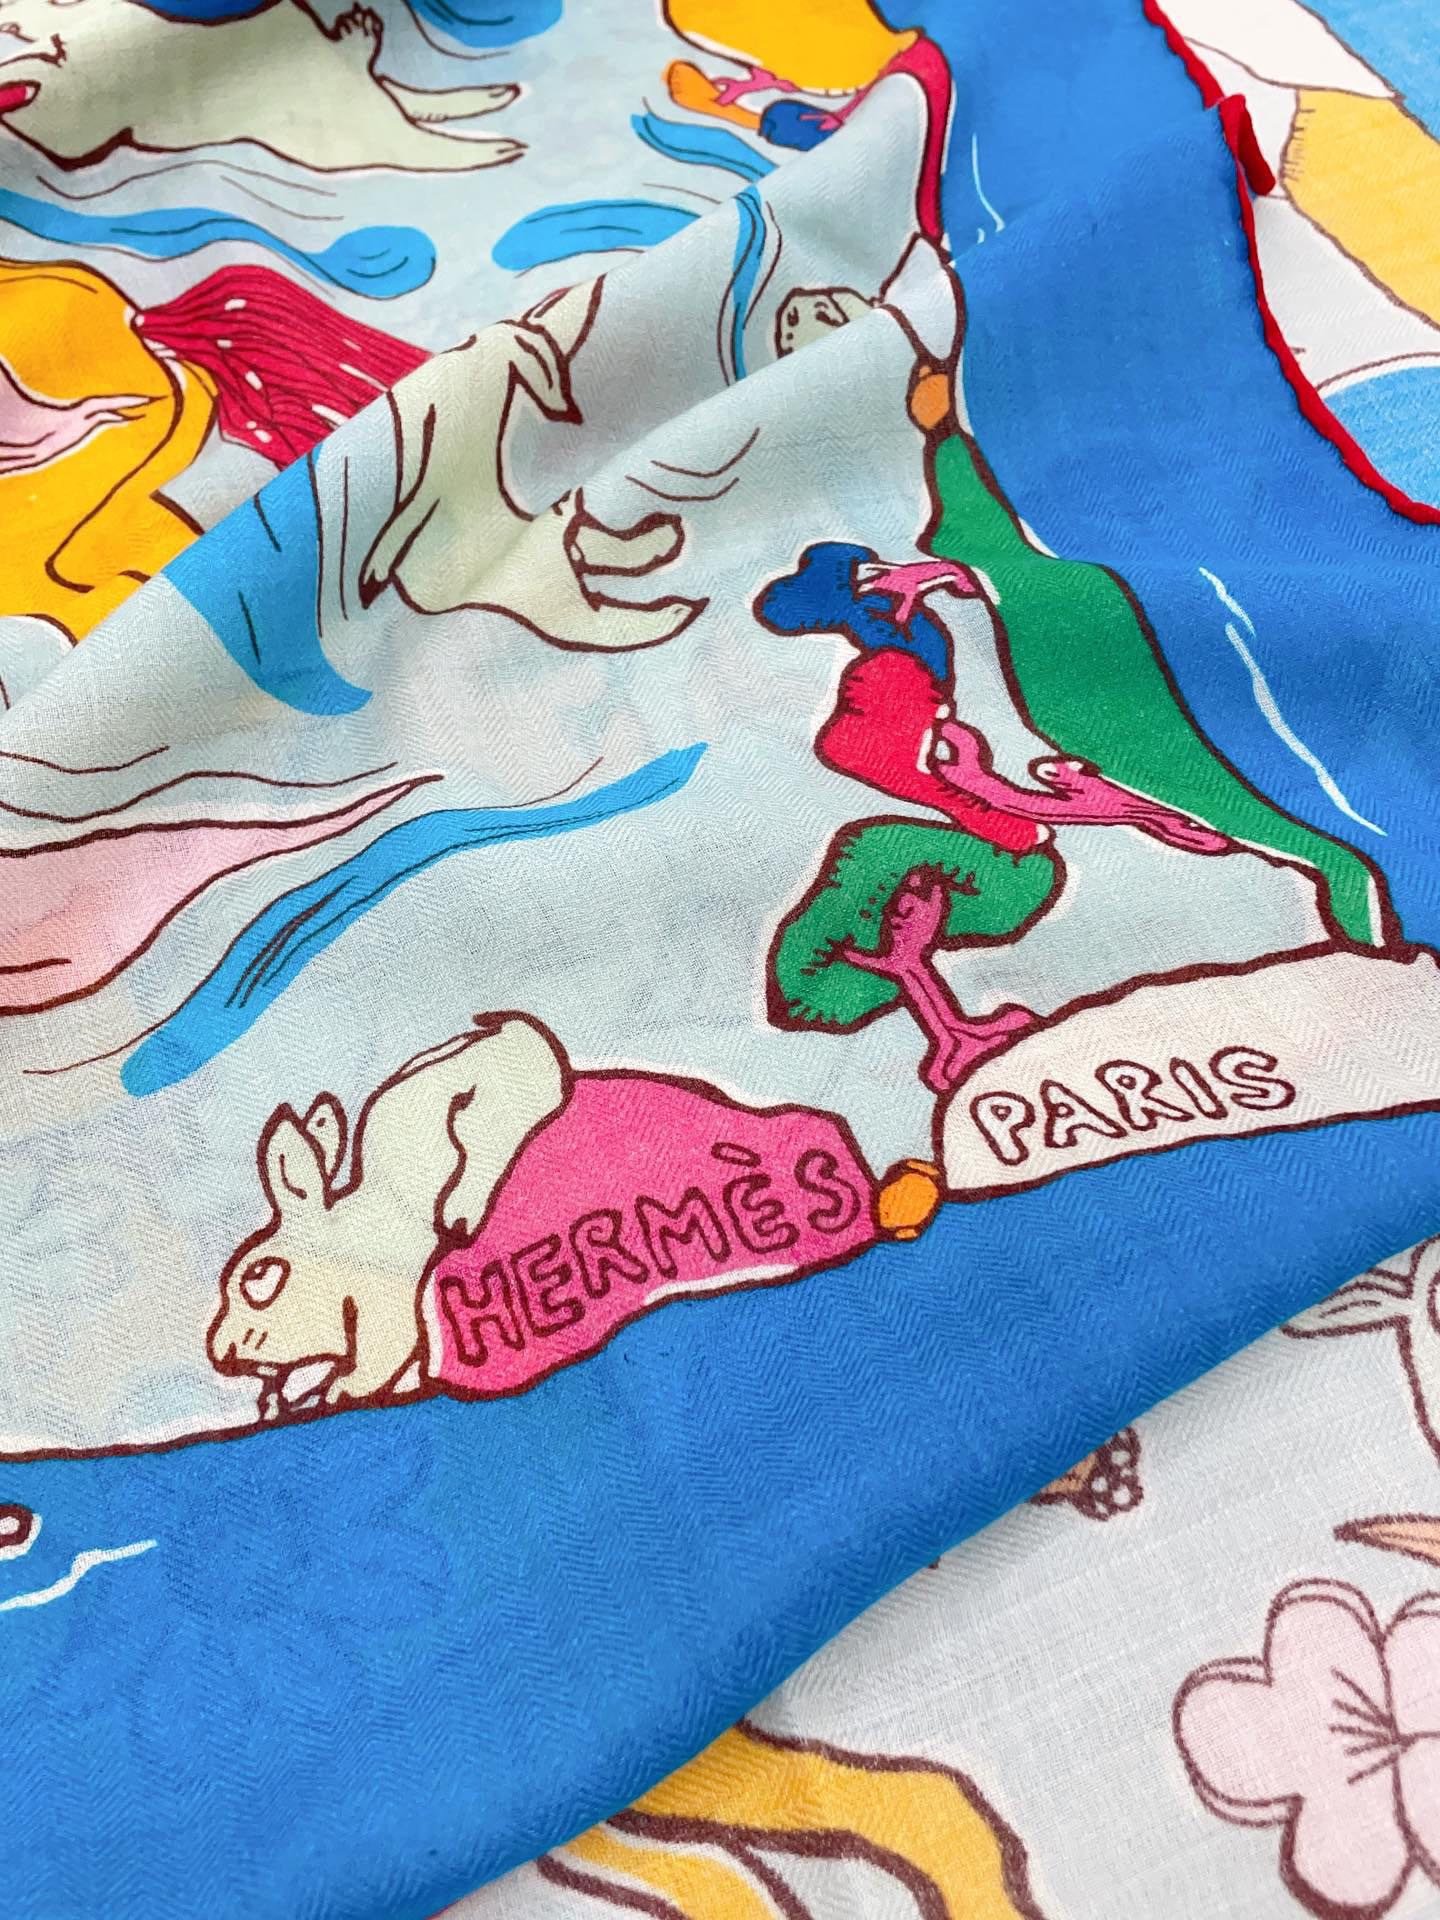 新款HERMES买了都说好看️推荐一千零一只兔子140羊绒方巾顶级工艺超值️爱马仕专柜爆款立体呈现图案纹